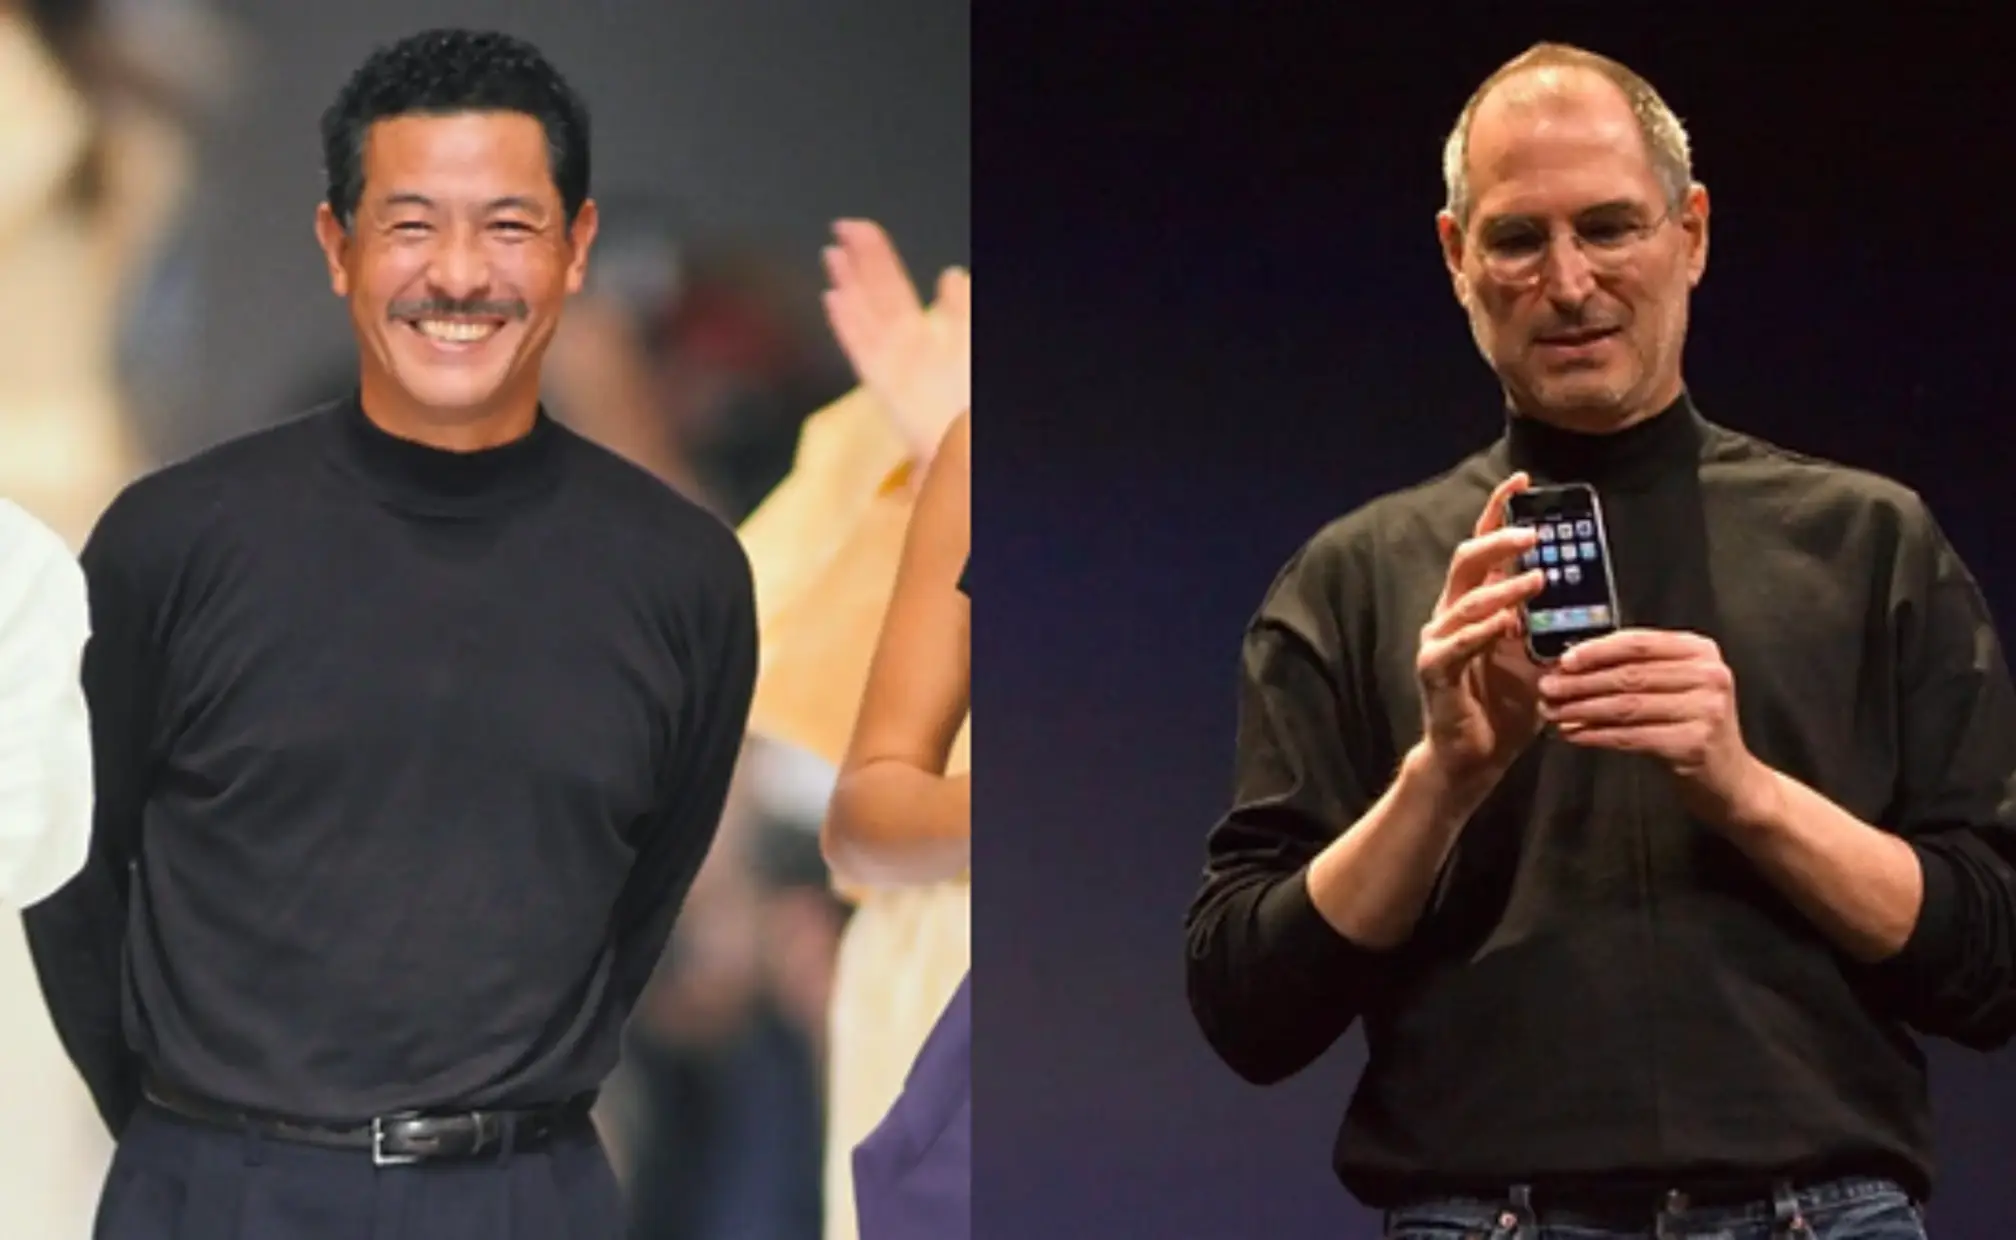 Tampilan turtleneck desain Issey Miyake pada Miyake dan Steve Jobs